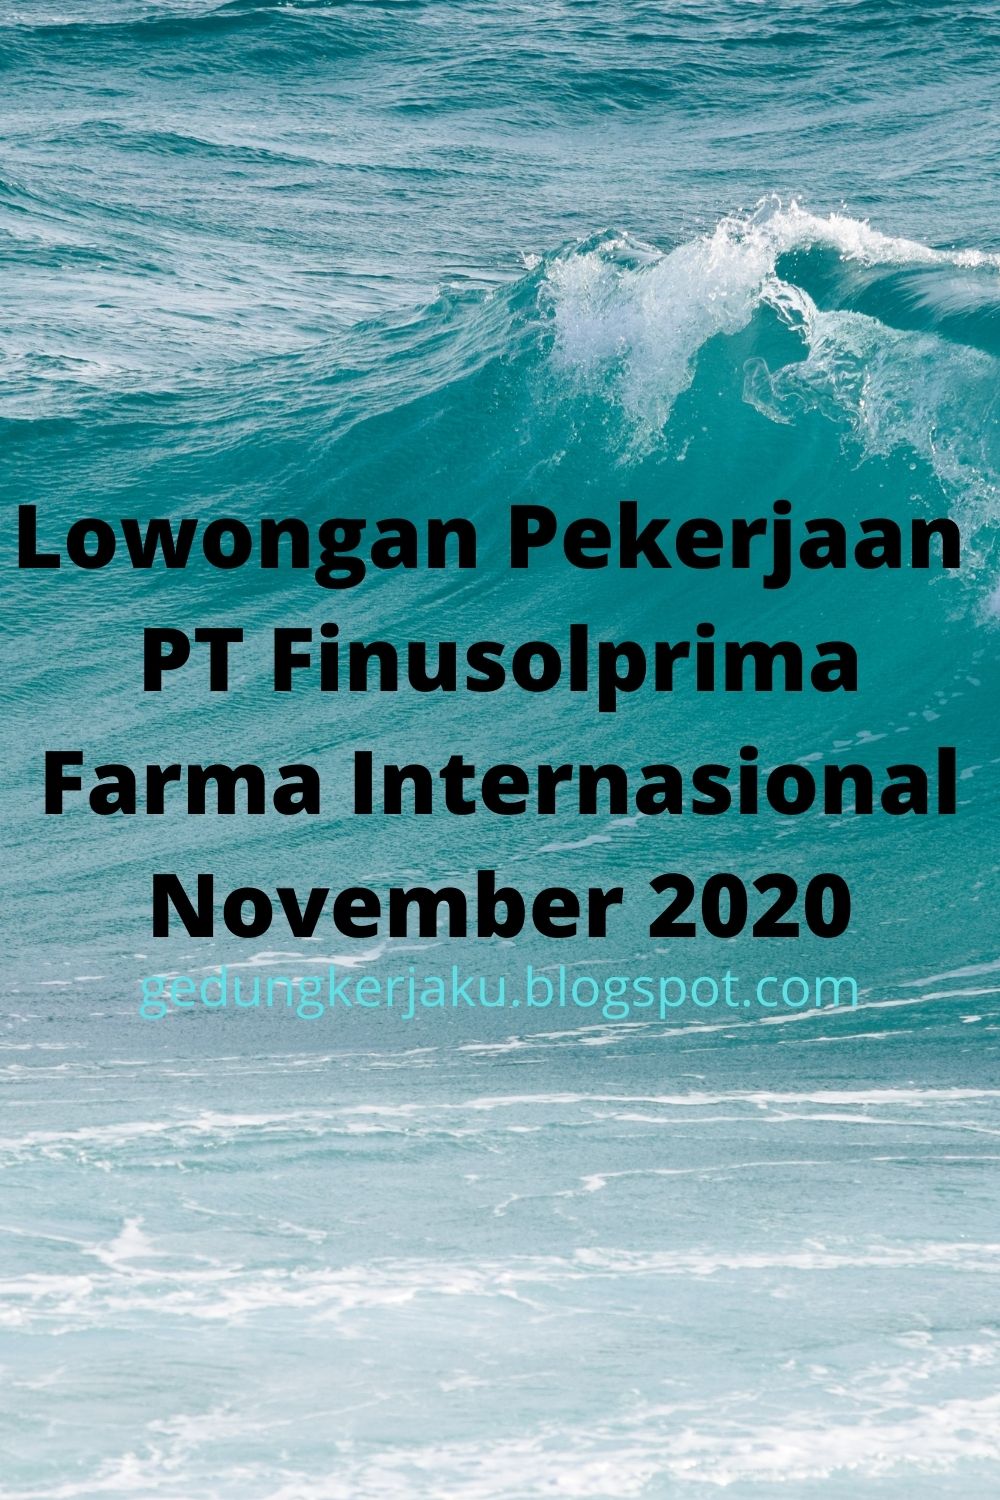 Lowongan Pekerjaan PT Finusolprima Farma Internasional November 2020